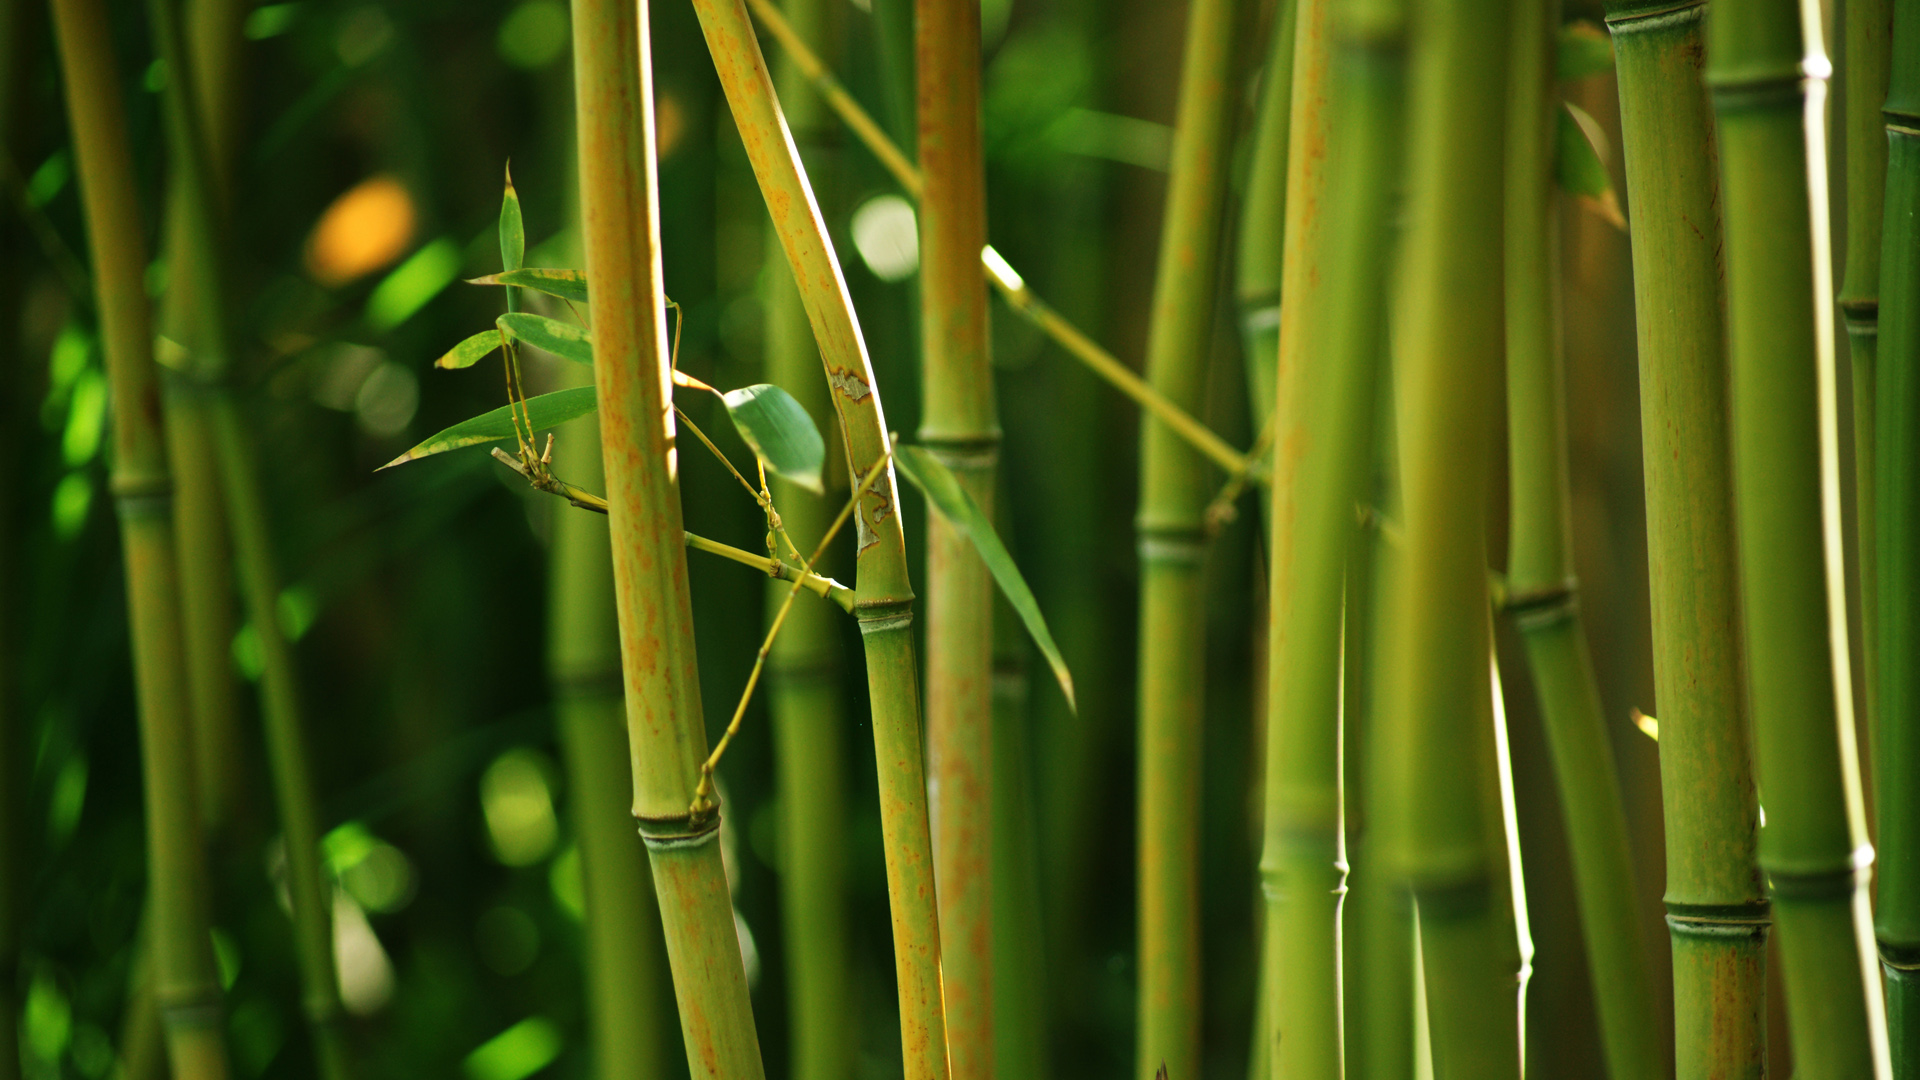 自然 竹子 竹茎 绿色竹叶 高清竹林风景桌面壁纸 彼岸壁纸手机版